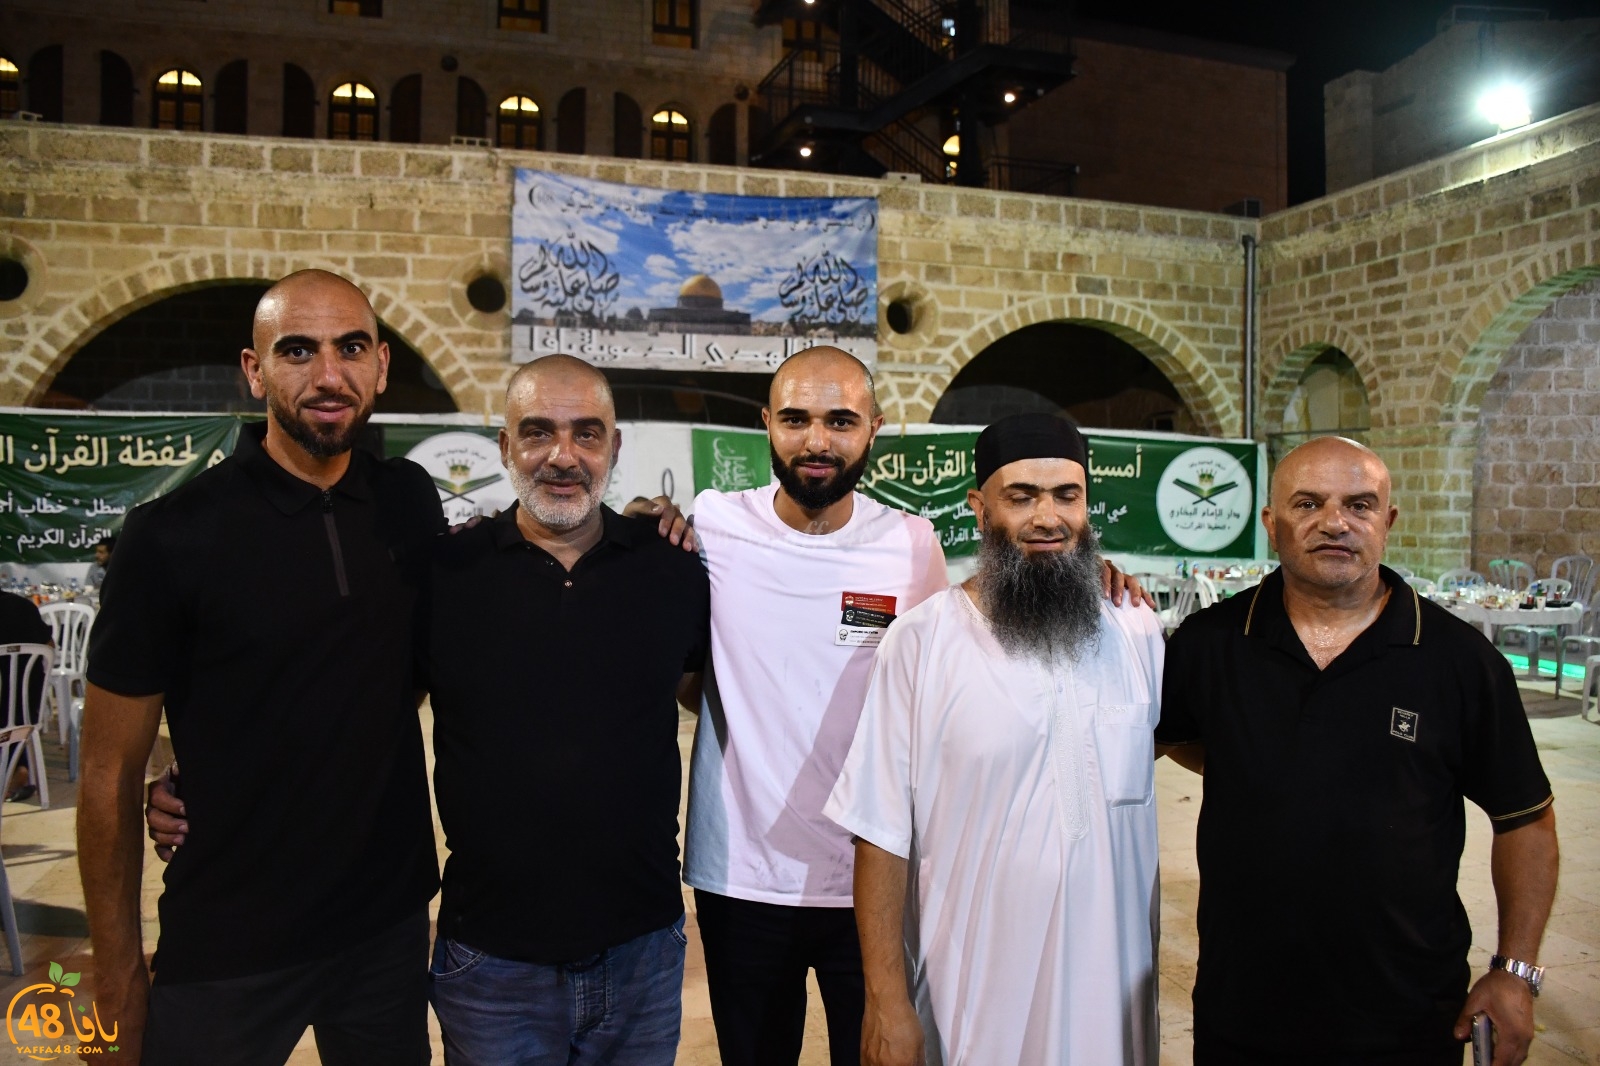 خيمة الهدى تستضيف الشيخ رائد فتحي لتكريم حفظة القرآن الكريم في يافا